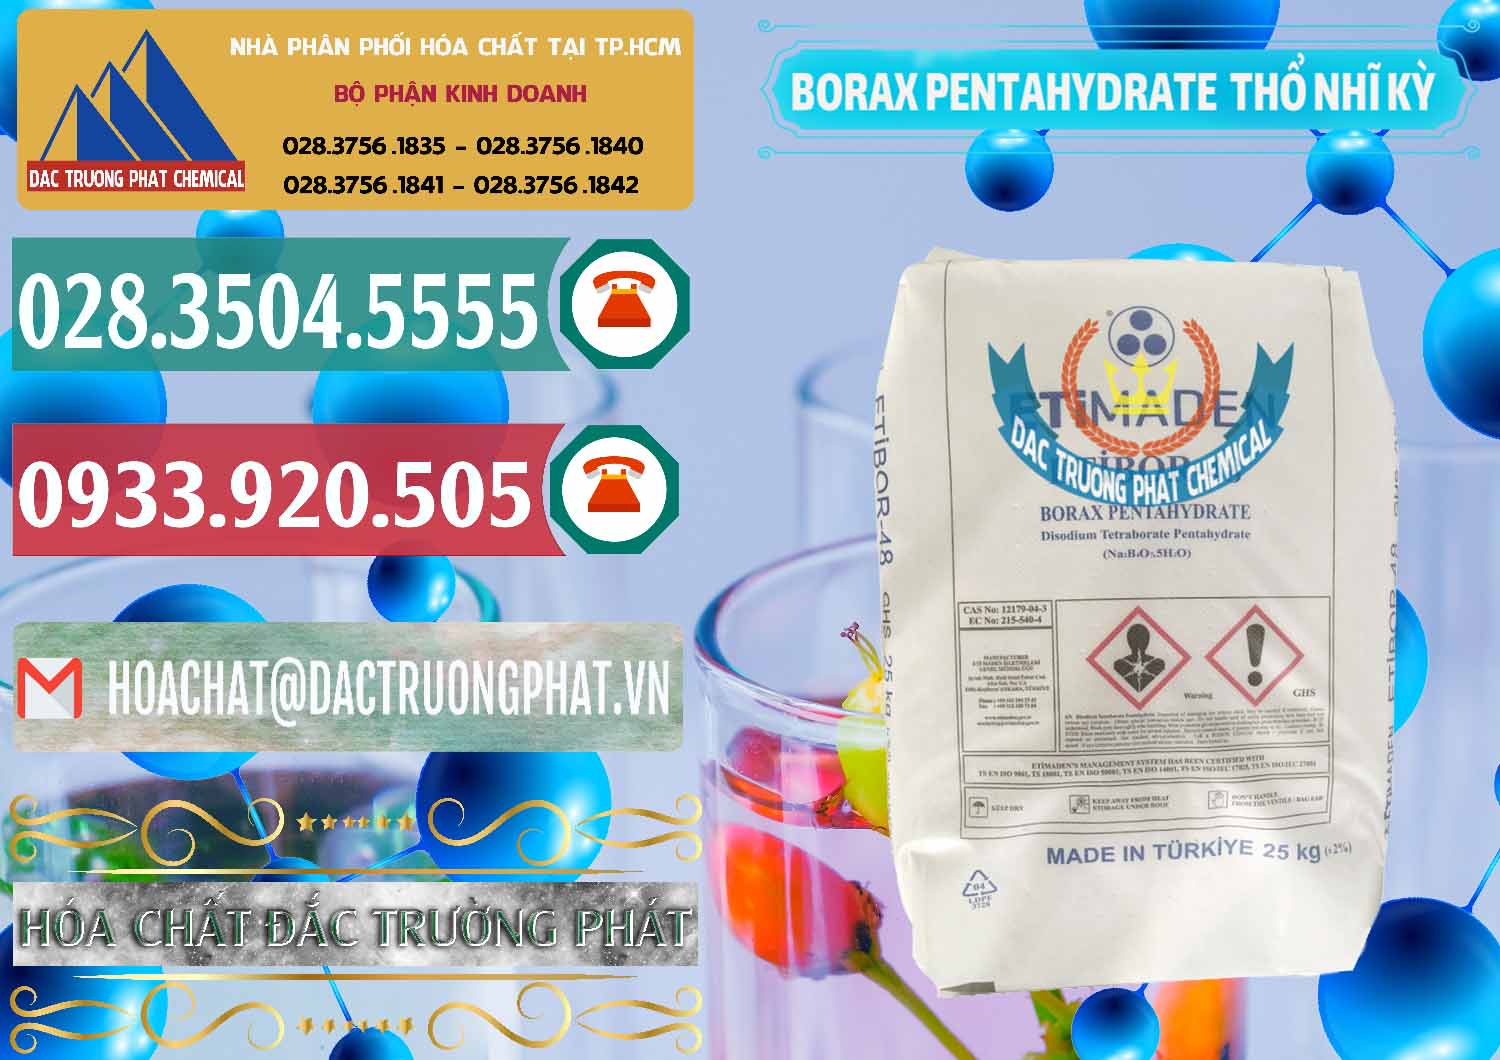 Cty chuyên bán ( cung ứng ) Borax Pentahydrate Thổ Nhĩ Kỳ Turkey - 0431 - Cty phân phối & bán hóa chất tại TP.HCM - muabanhoachat.vn